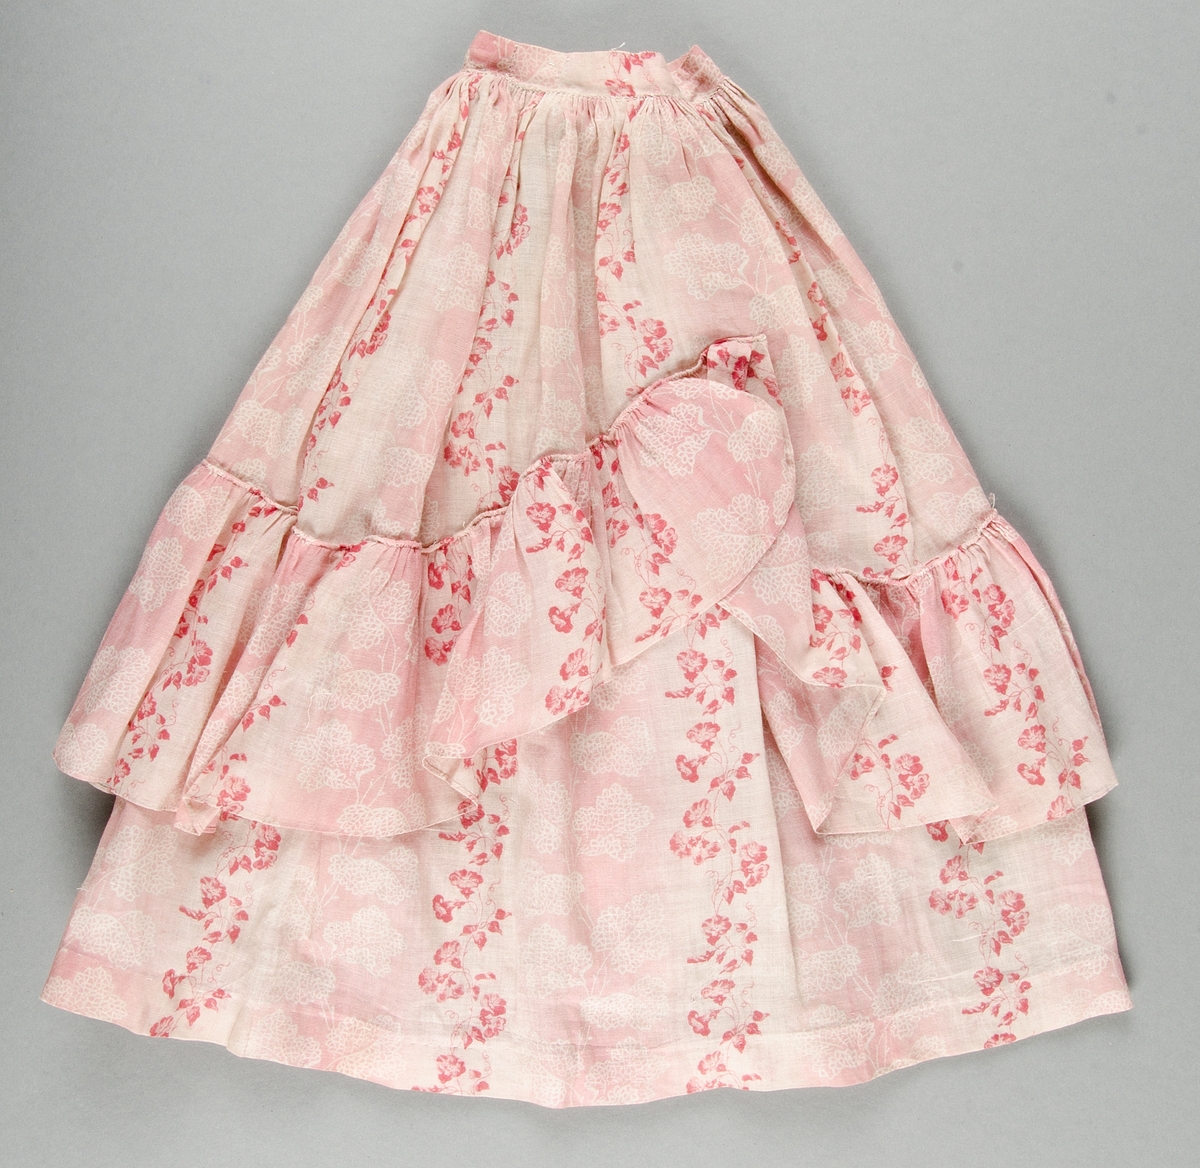 Blus och kjol av rosa- och vitrandig bomullsvoile med tryckt mönster i rött och rosa på vit botten. Livet kantat med röda ylleband.